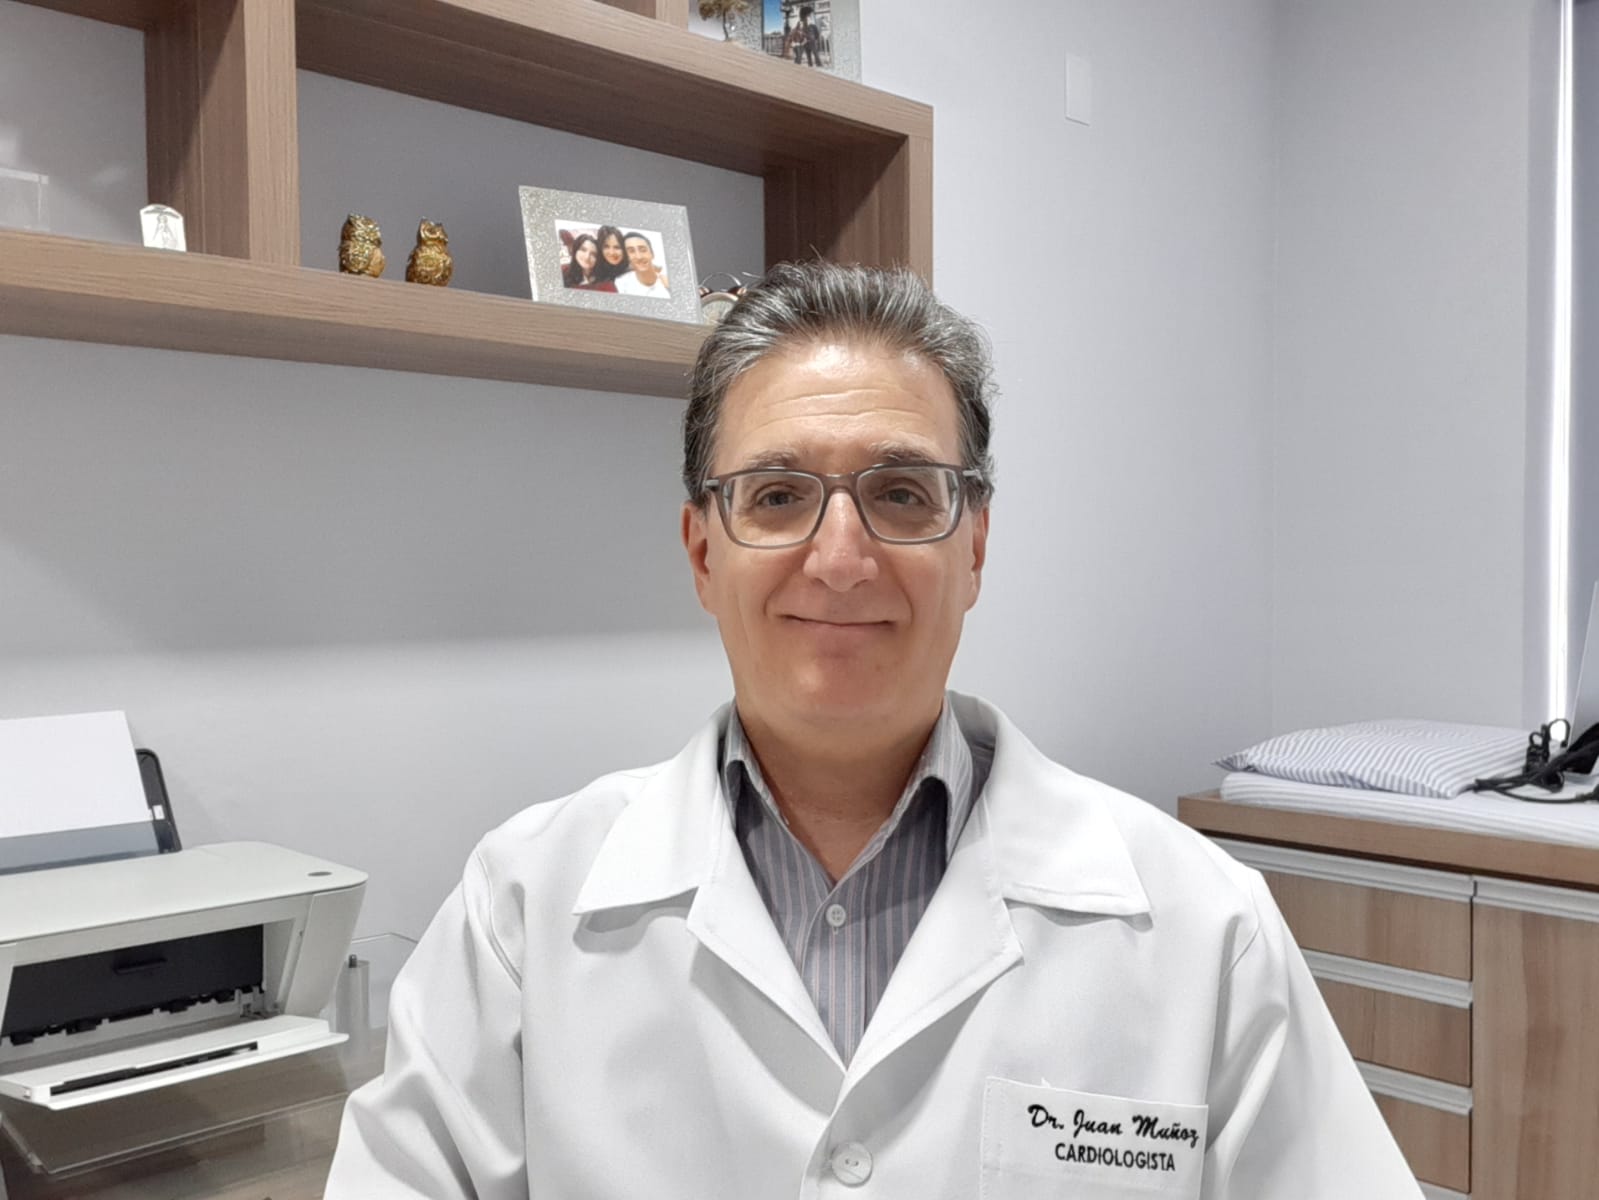 Dr. Juan Francisco Munoz Cruz